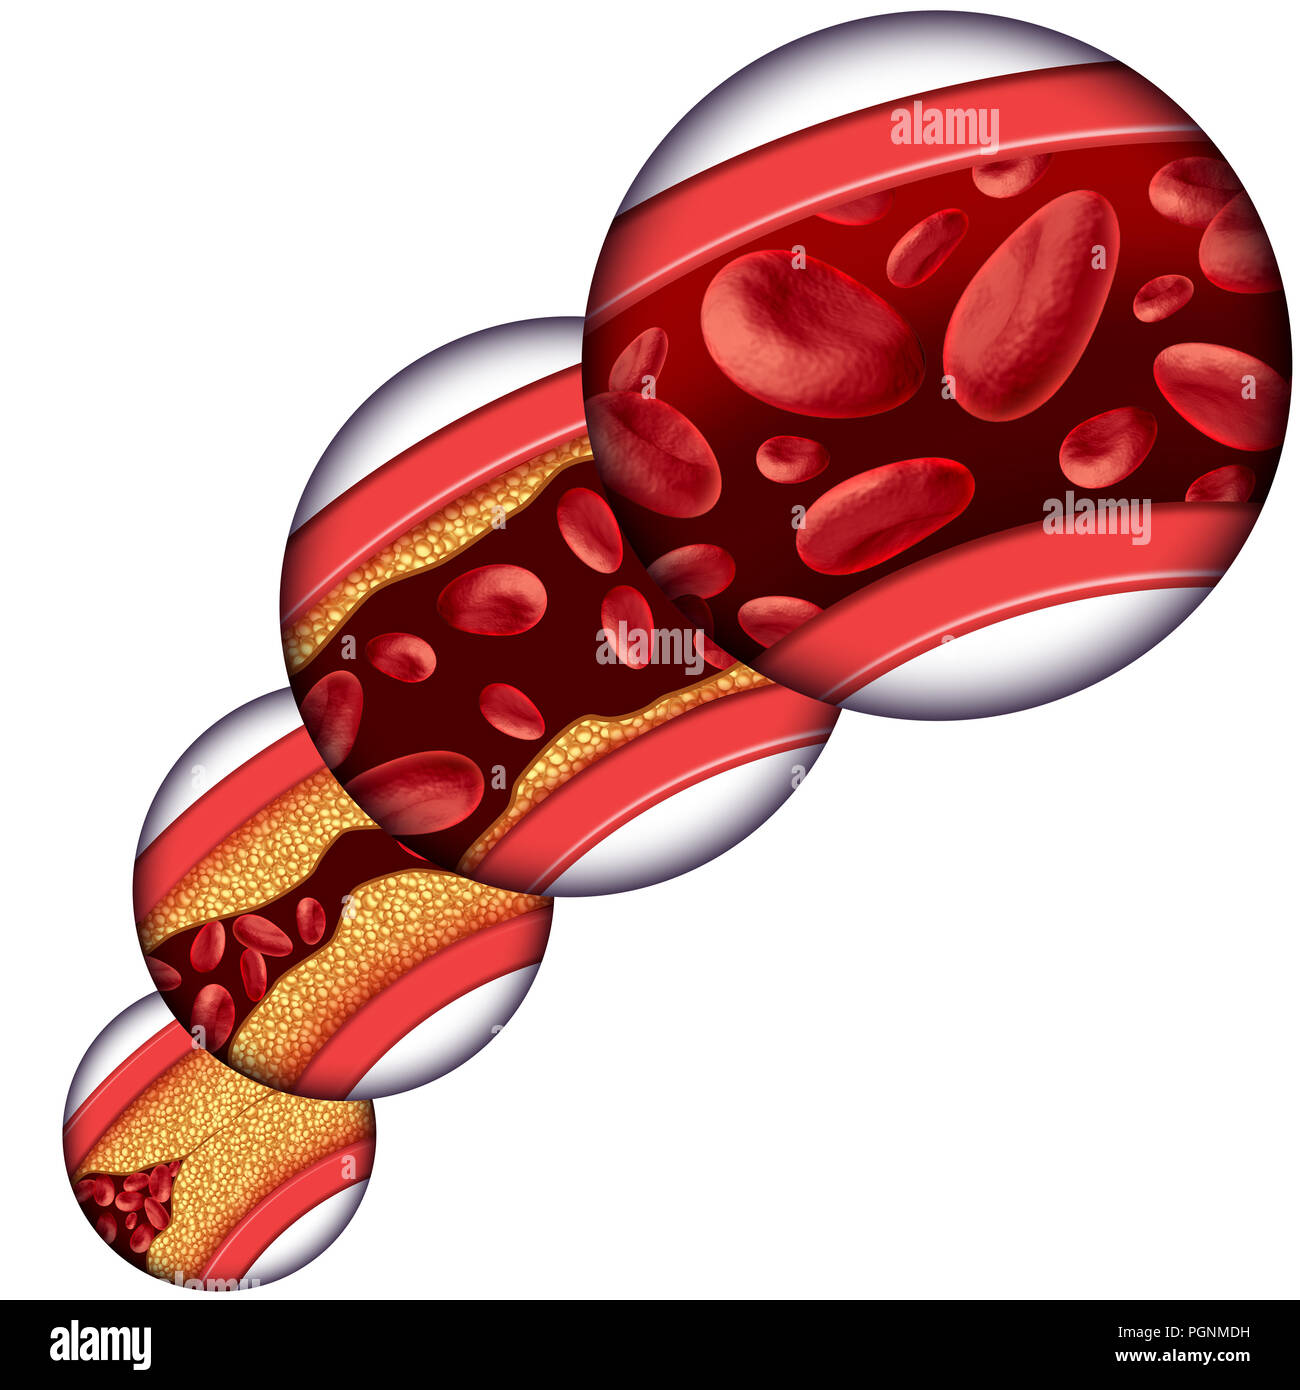 Koronare Cholesterin Therapie medizinisches Konzept wie eine Vene mit schrittweisen Entfernung von Plaque aus verstopften Arterien und Atherosklerose. Stockfoto